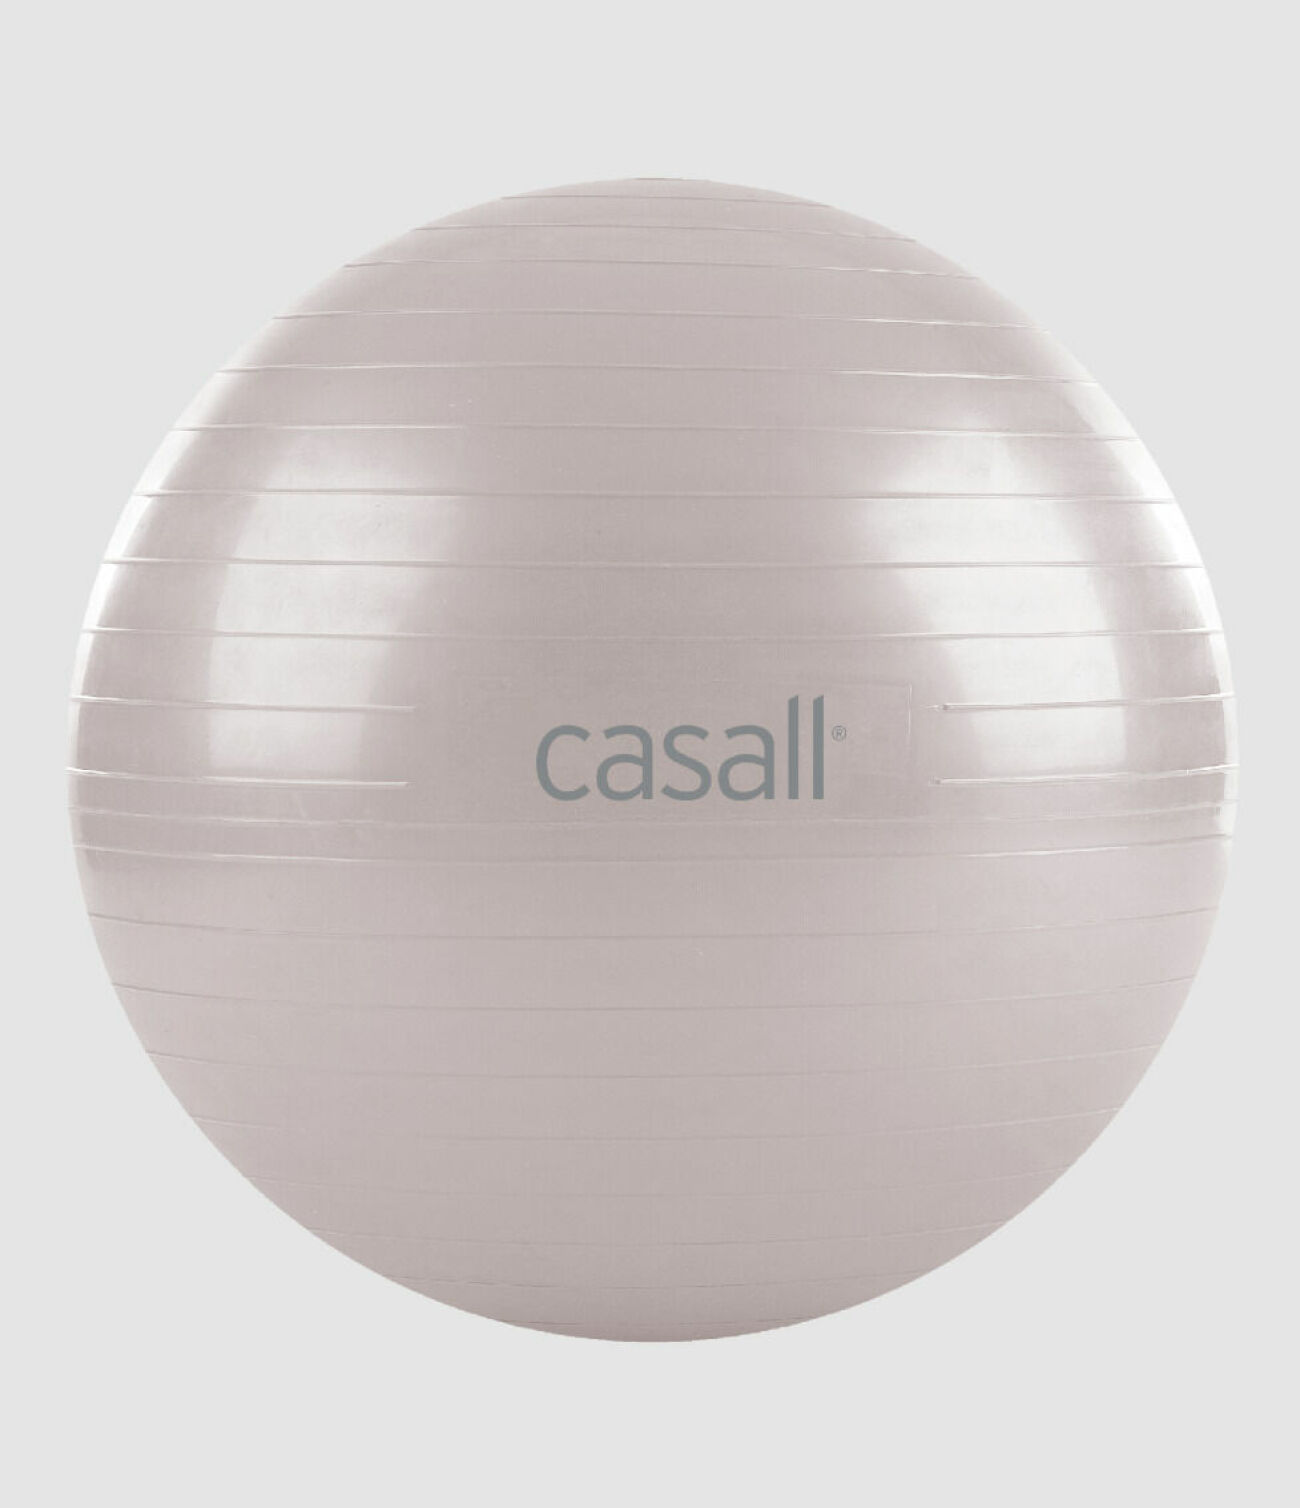 stilren pilatesboll från casall